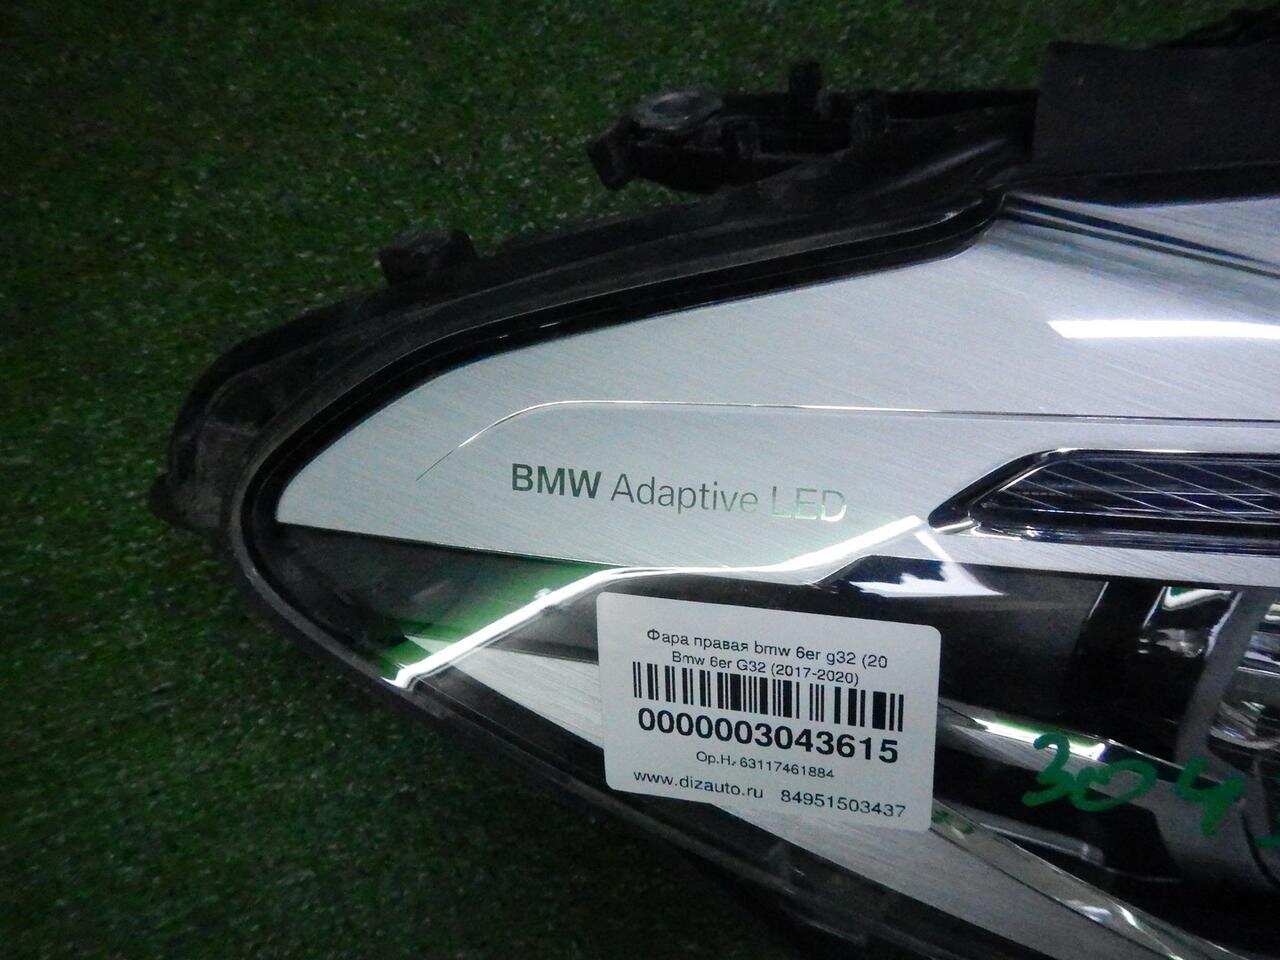 Фара правая BMW 6ER G32 (2017-2020) 63117461884 0000003043615